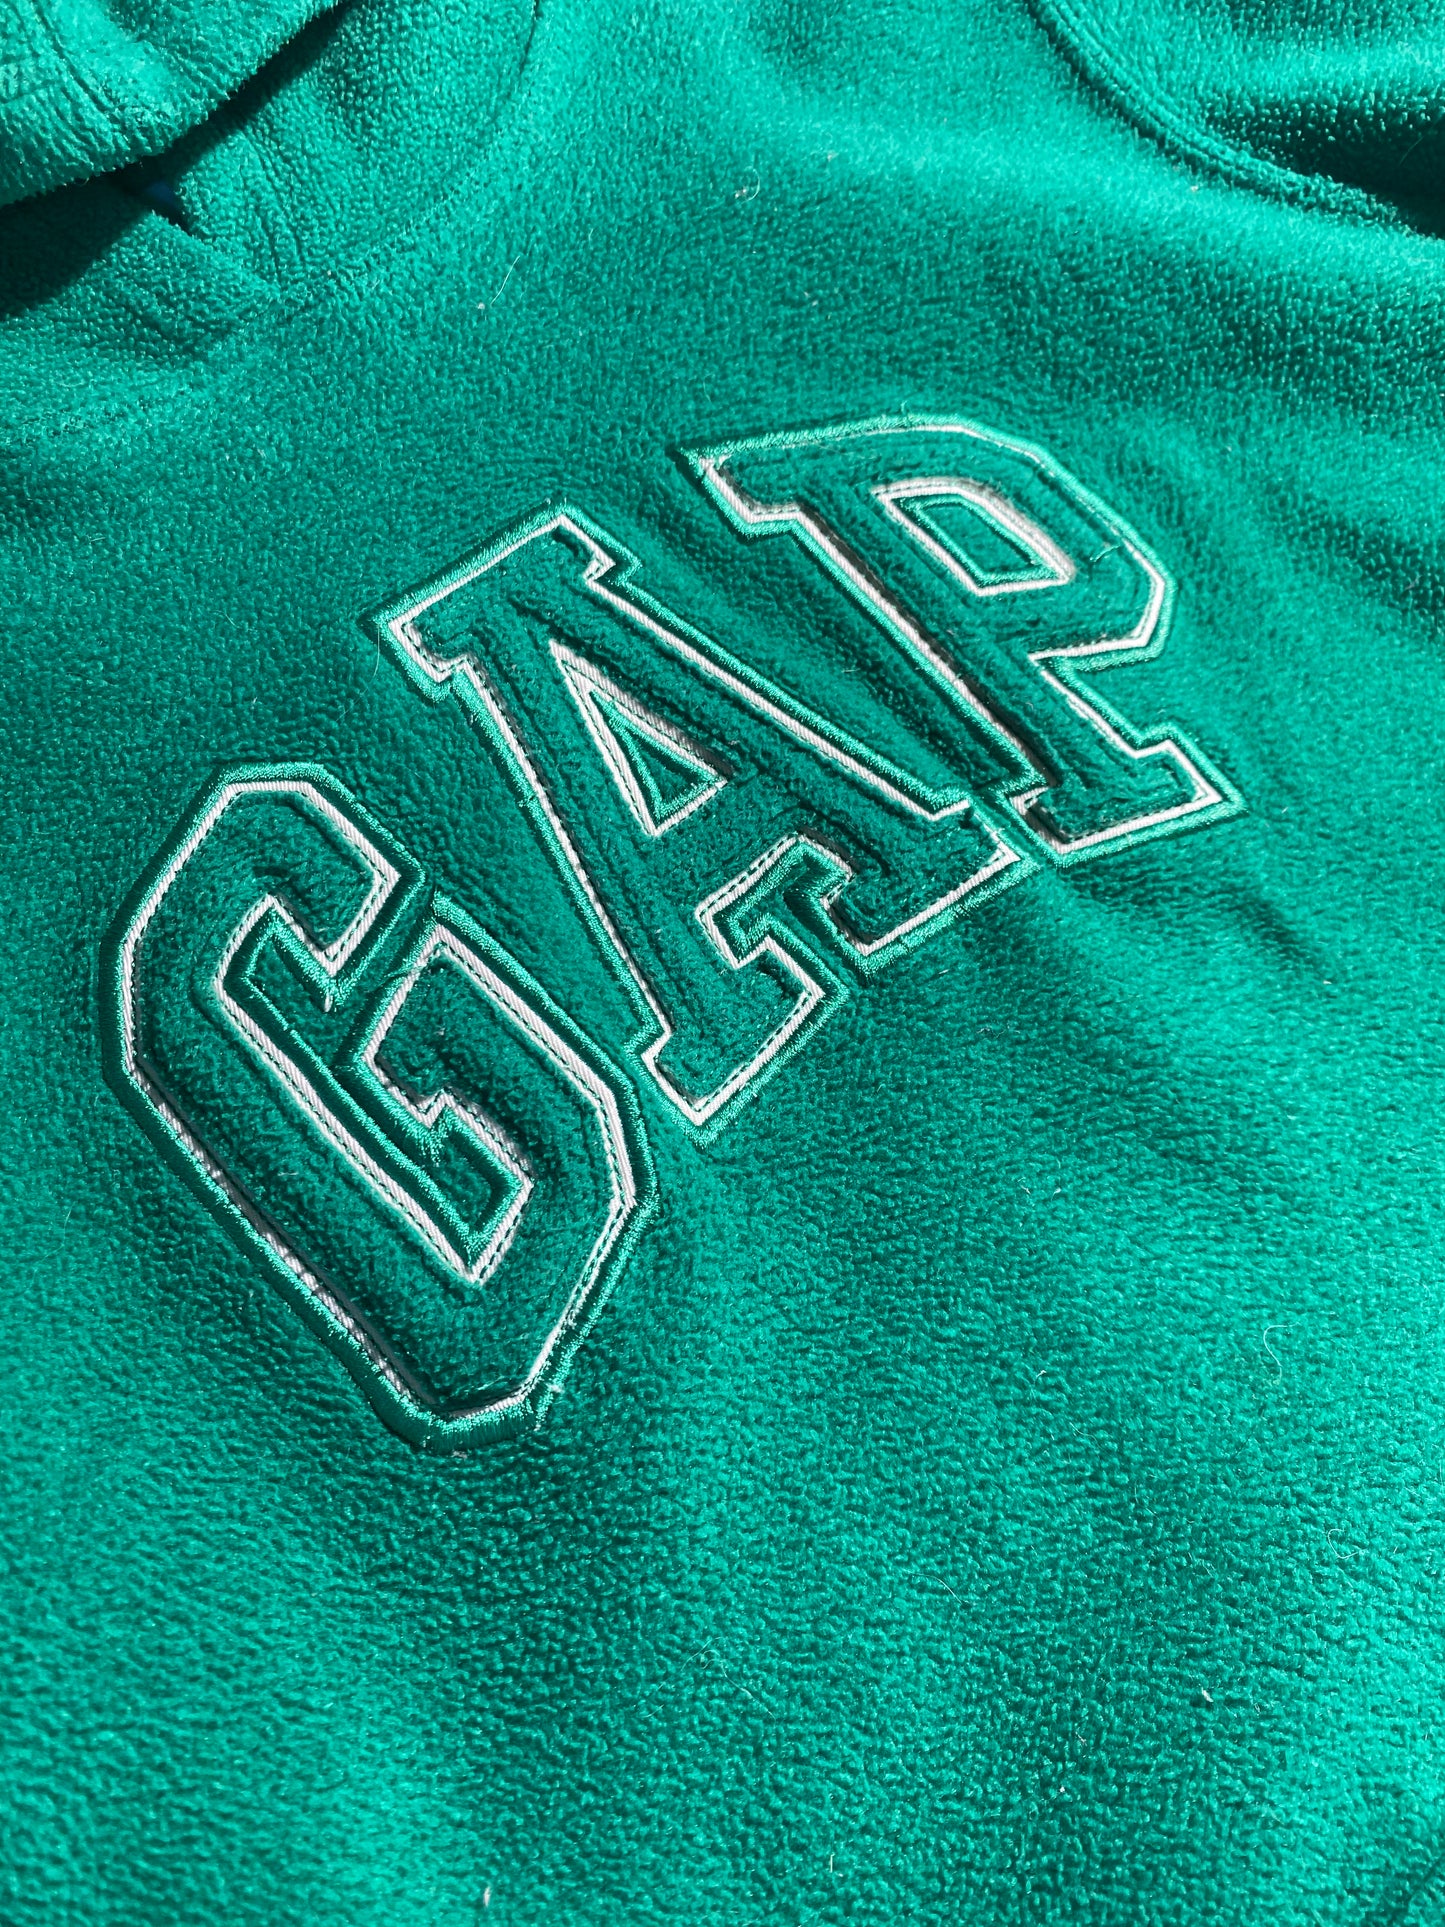 Vintage Gap Hoodie Fleece Terry Cloth